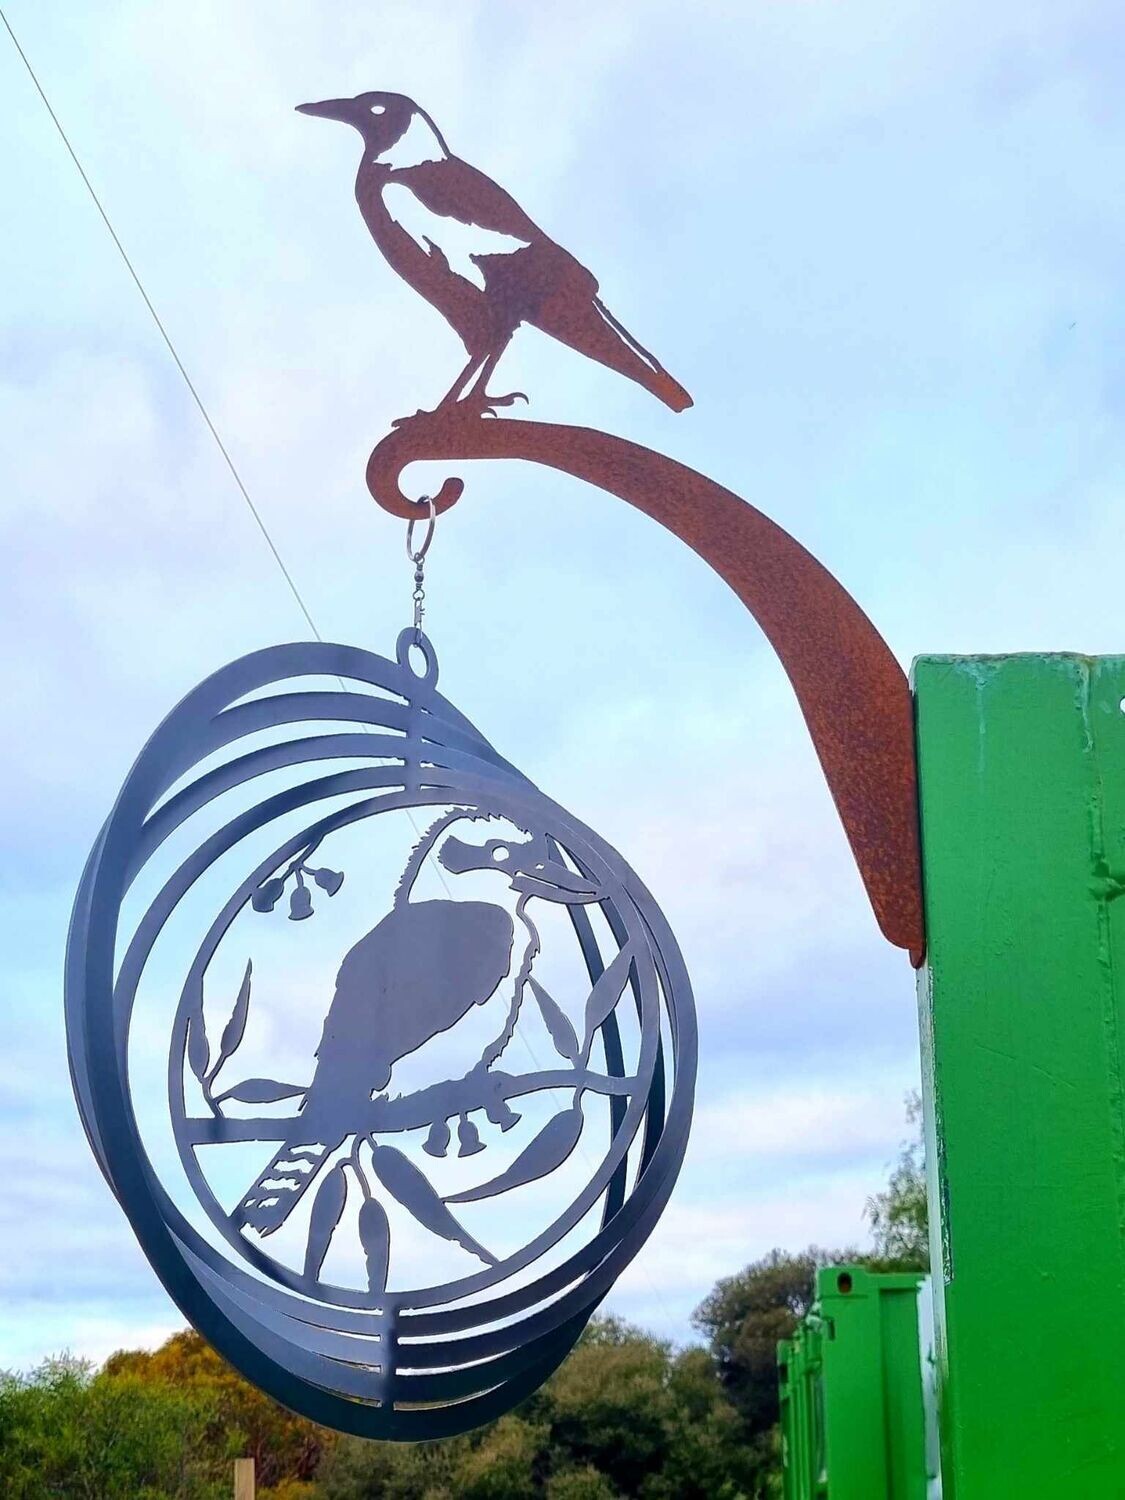 Kookaburra Circular Wind spinner